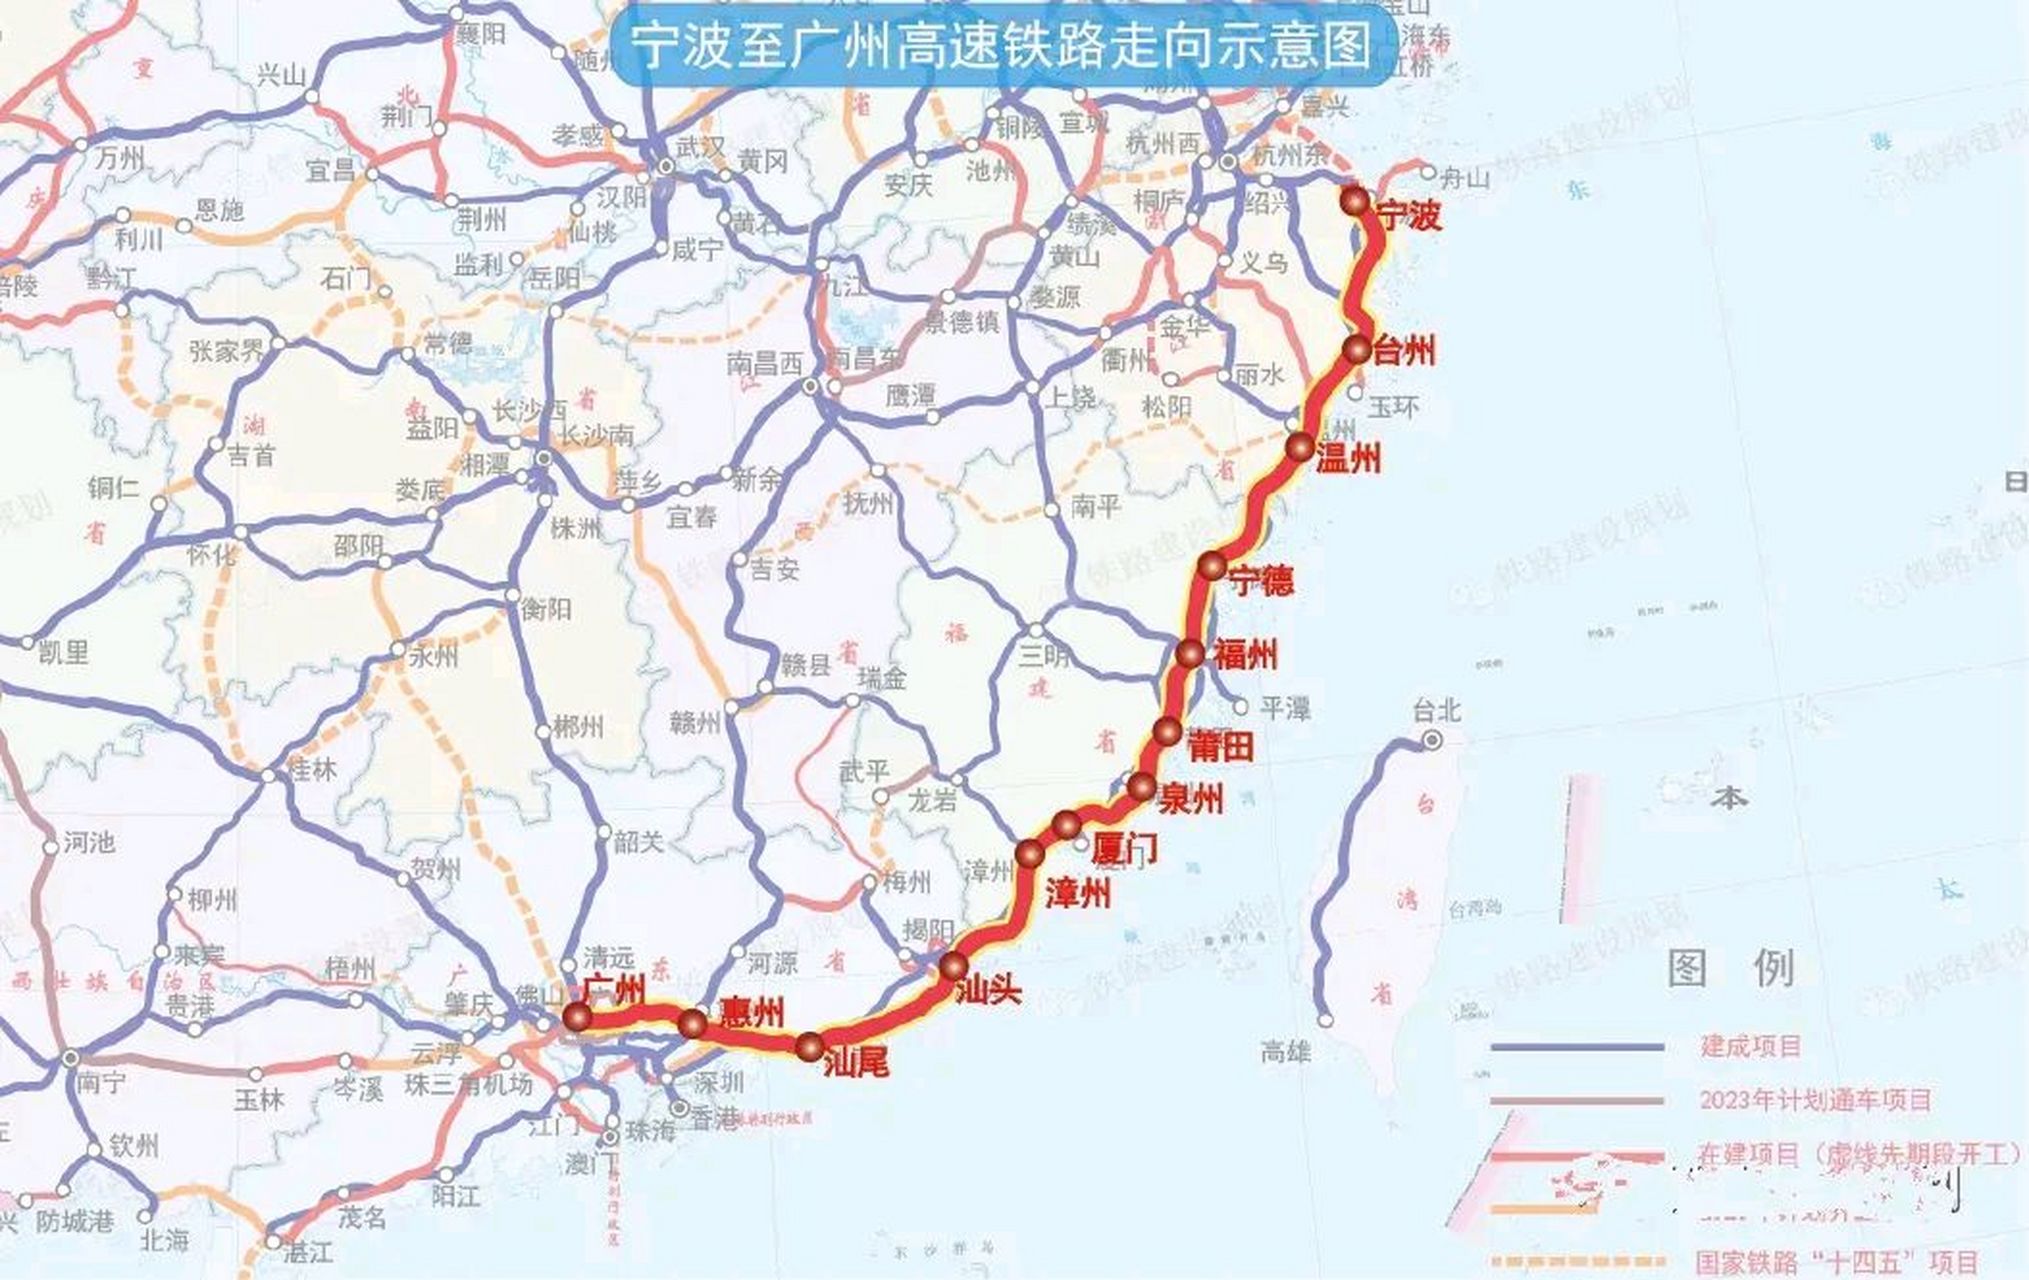 为什么要建设汕汕高铁,为什么不可以和深汕高铁并线呢?